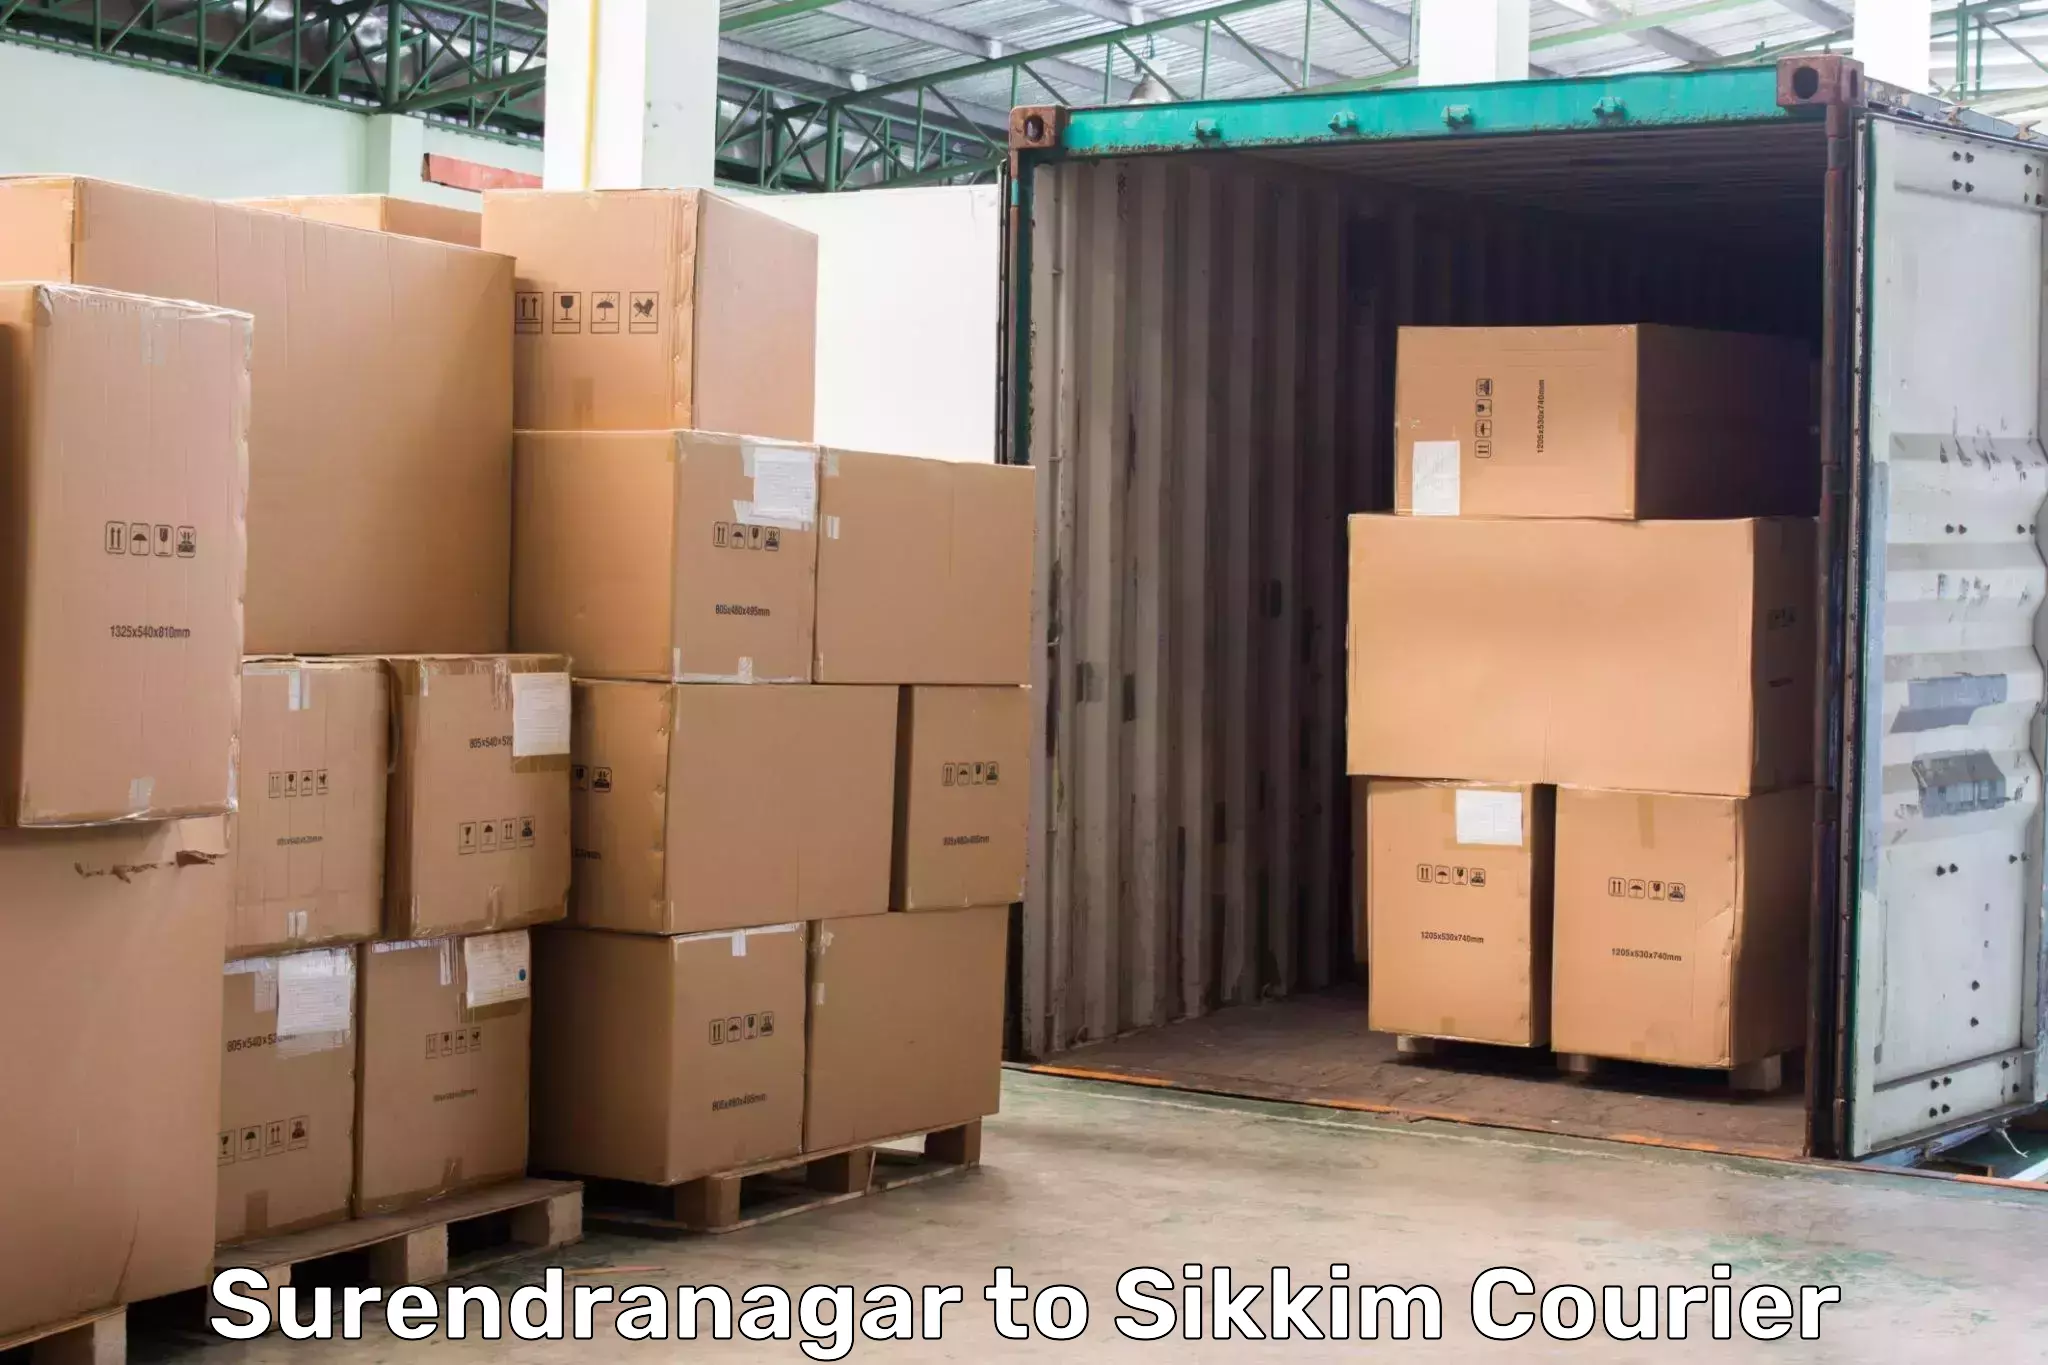 Next-generation courier services Surendranagar to Sikkim